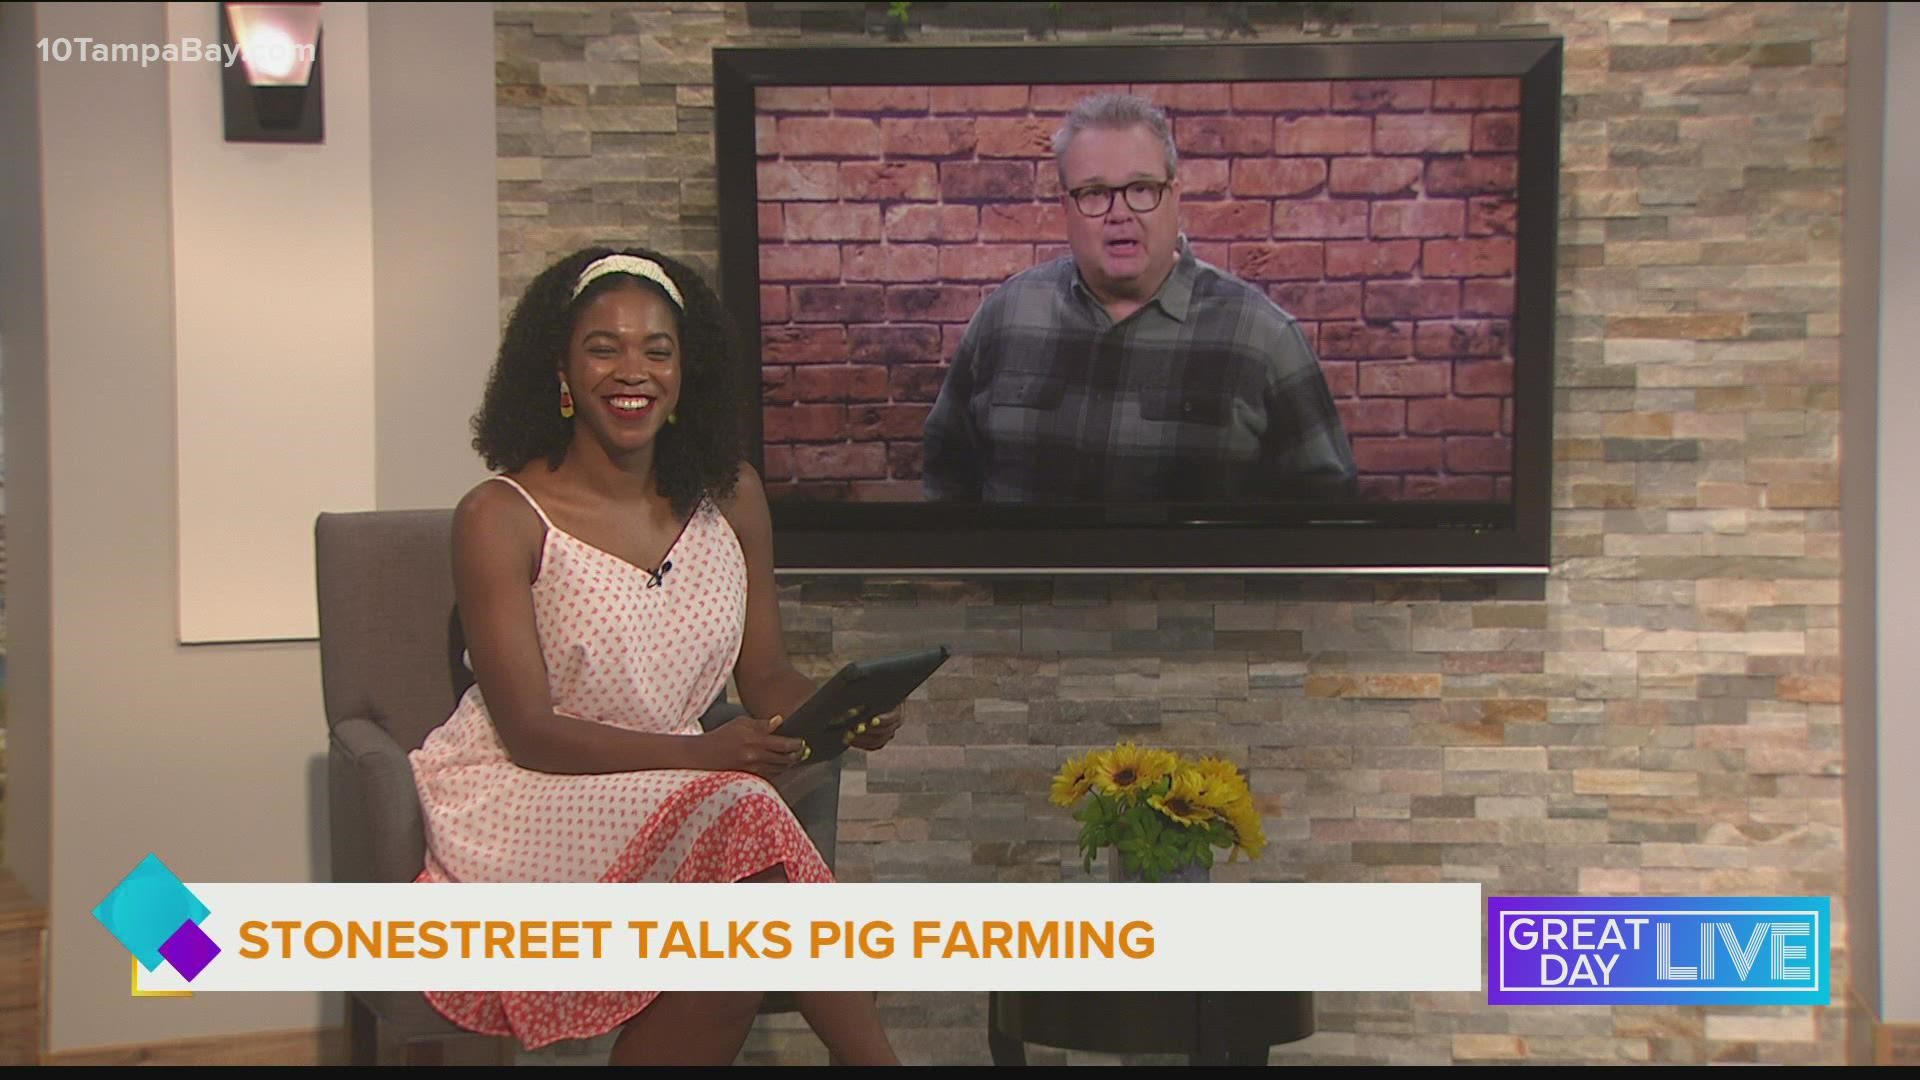 Stonestree talks pig farming